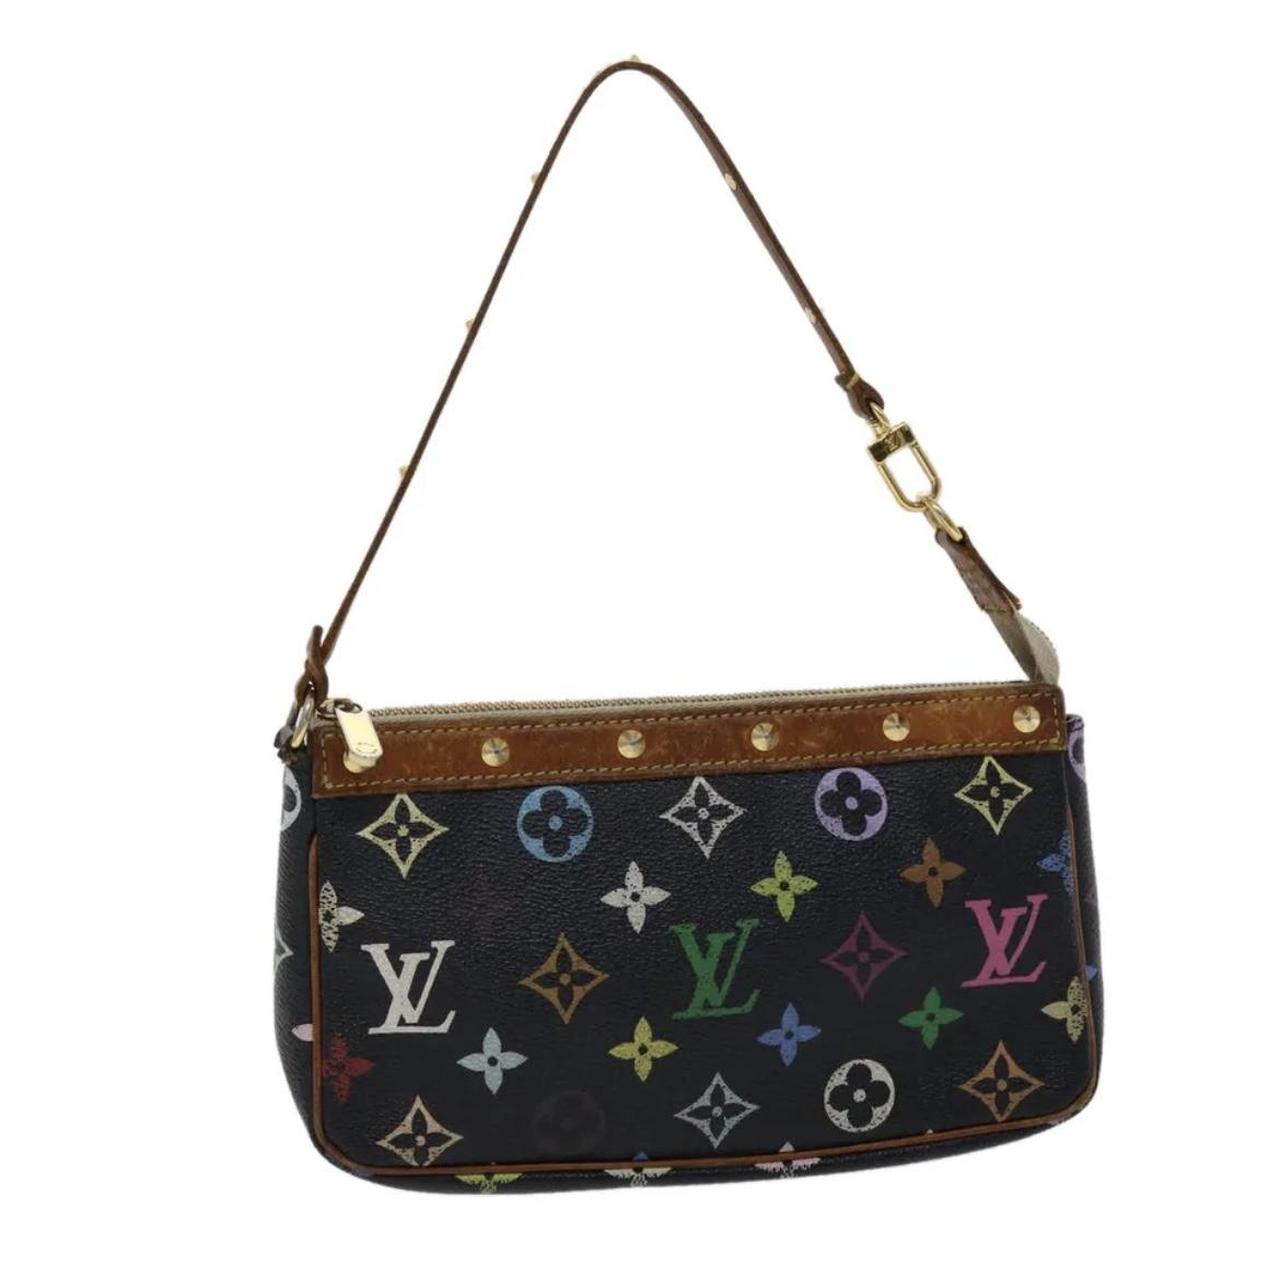 Louis Vuitton pochette valmy monogram bag Brand new - Depop